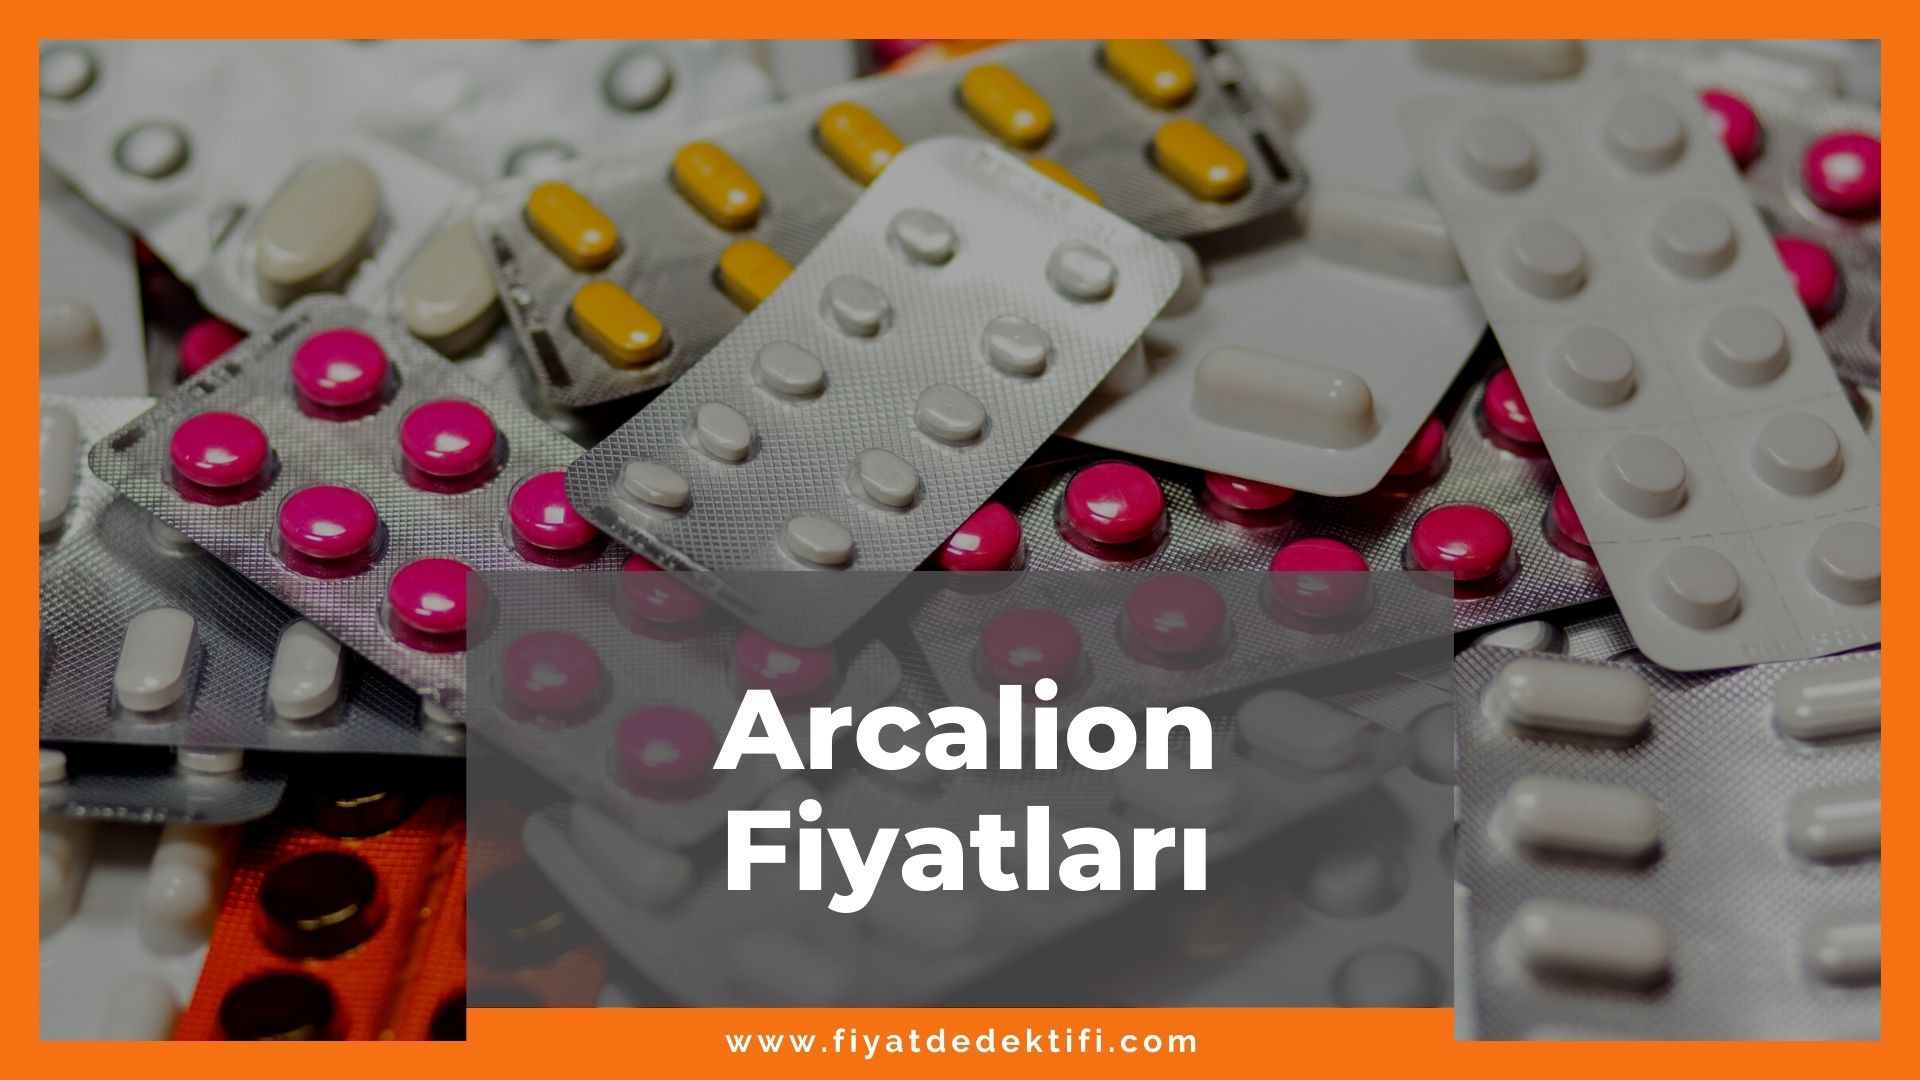 Arcalion Fiyat 2021, Arcalion Fiyatı, Arcalion 200 mg Fiyatı, arcalion zamlandı mı, arcalion zamlı fiyatı ne kadar kaç tl oldu